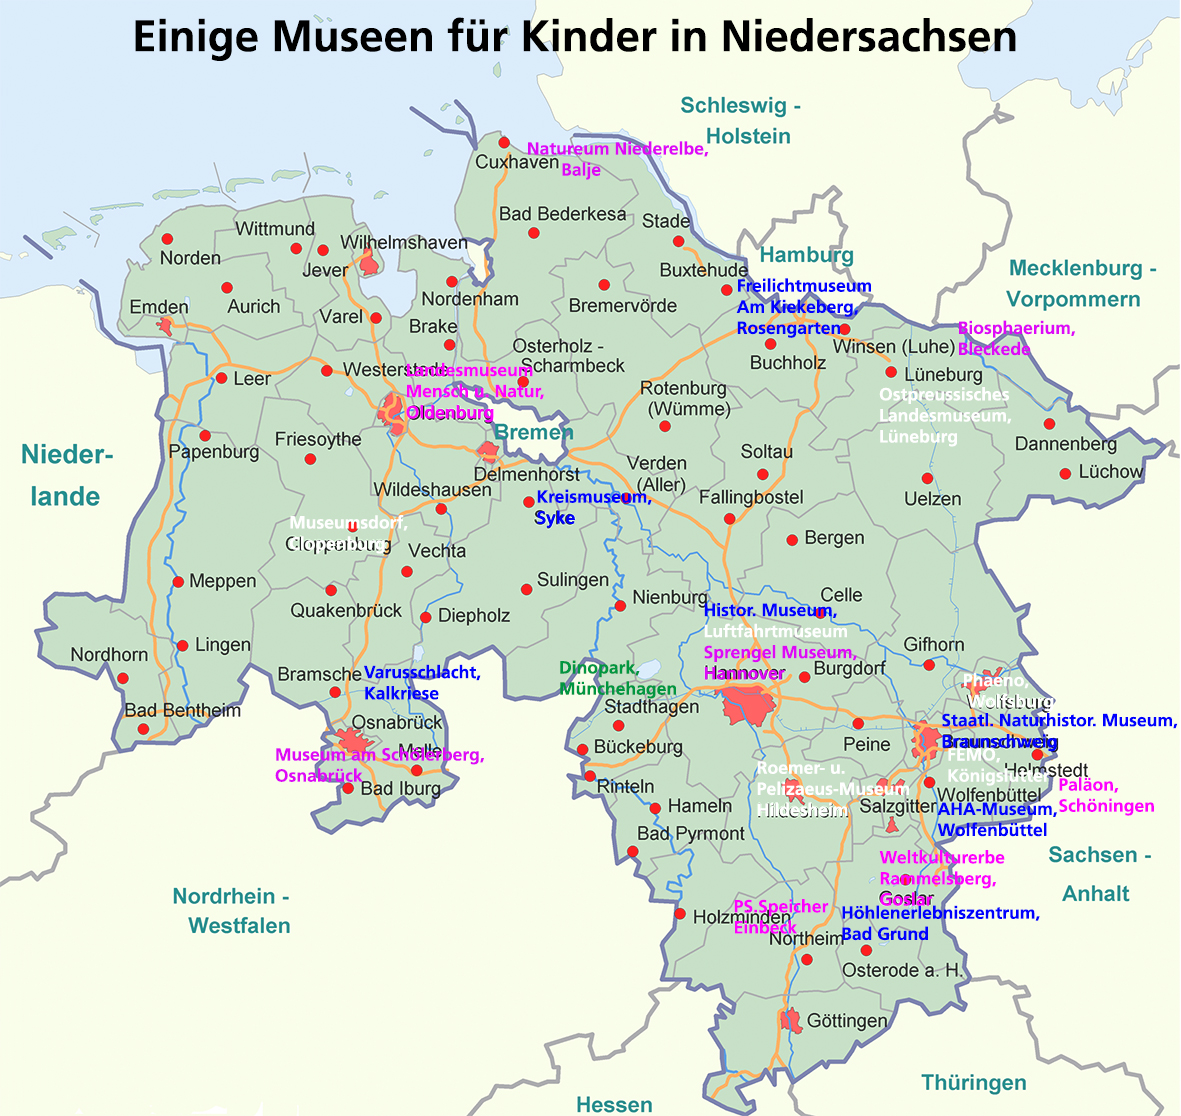 Einige Museen in Niedersachsen